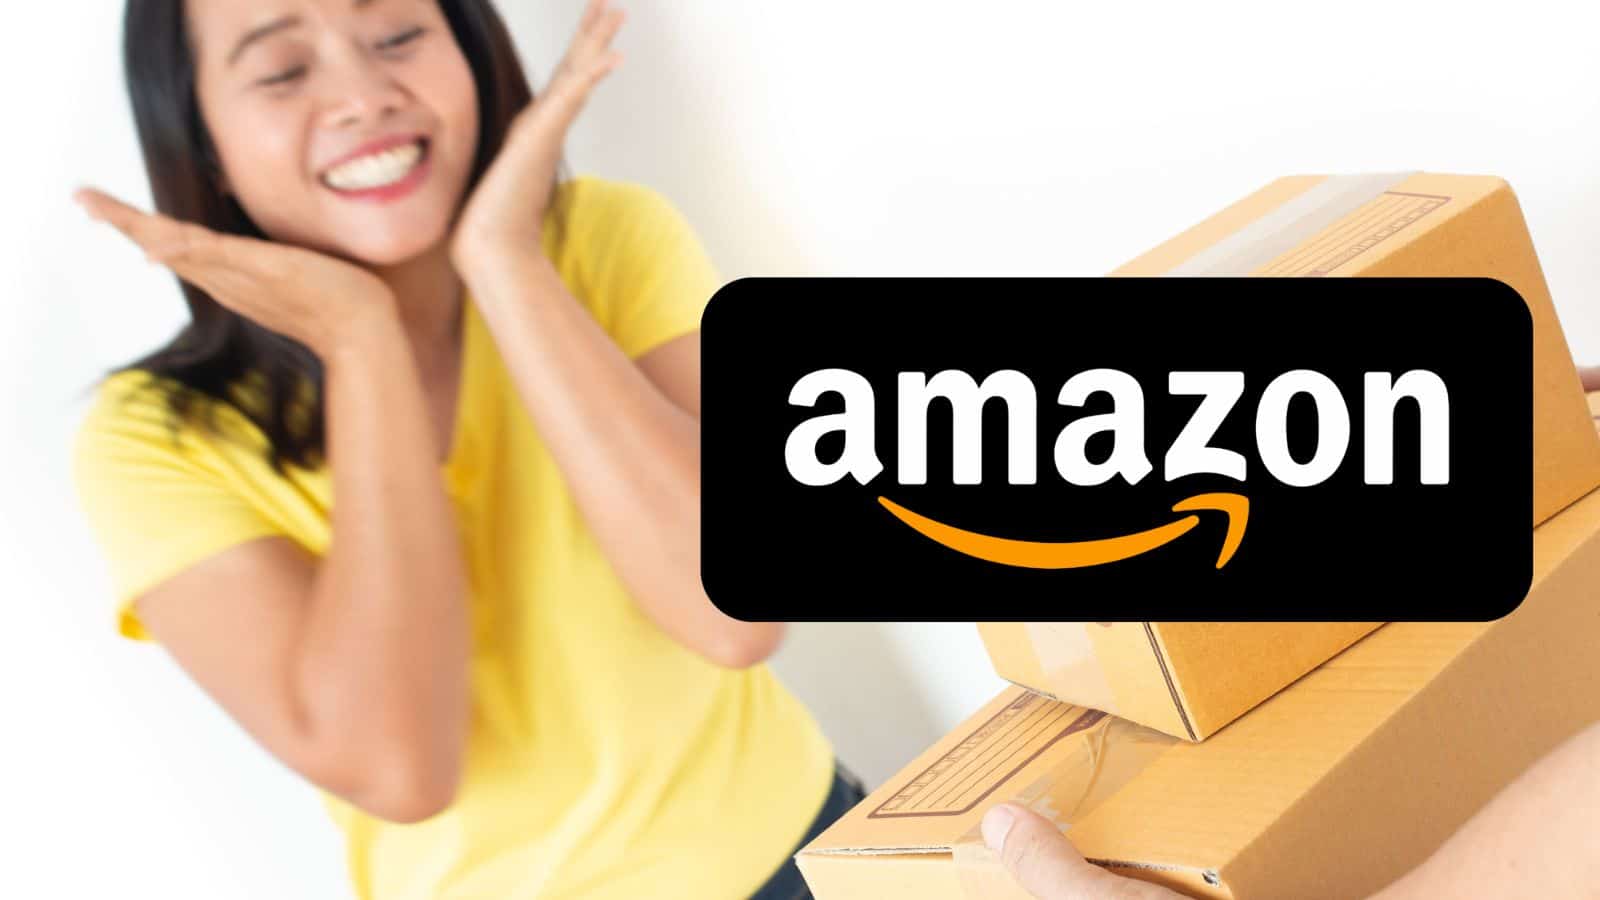 Amazon ASSURDA: oggi regala offerte SEGRETE gratis e sconti dell'80%